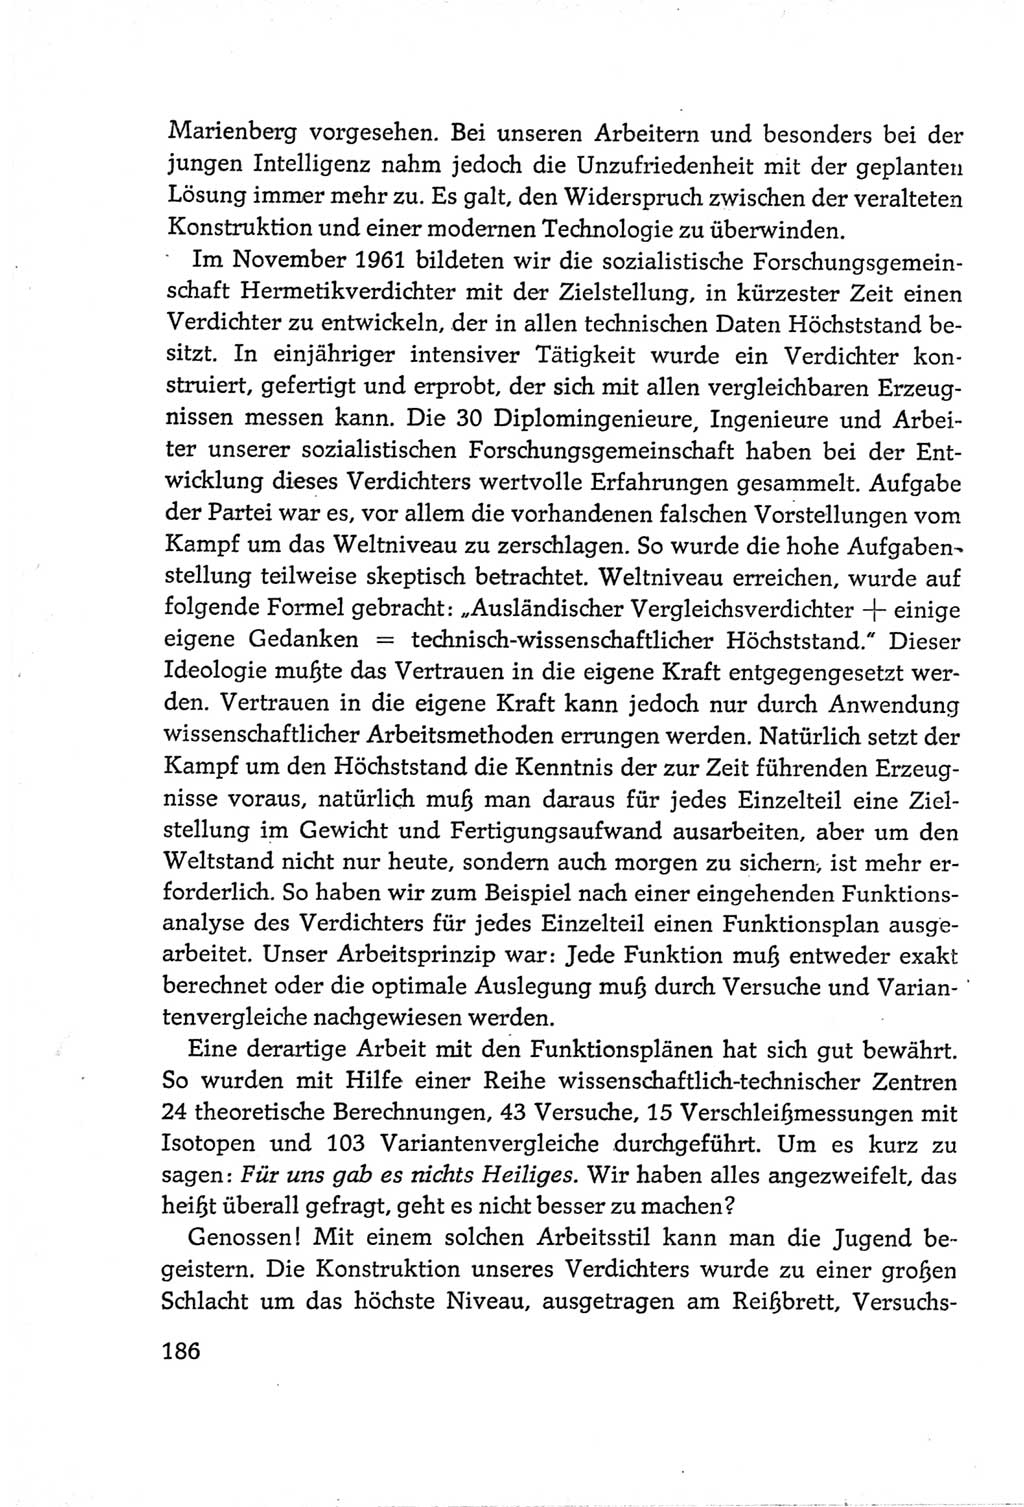 Protokoll der Verhandlungen des Ⅵ. Parteitages der Sozialistischen Einheitspartei Deutschlands (SED) [Deutsche Demokratische Republik (DDR)] 1963, Band Ⅲ, Seite 186 (Prot. Verh. Ⅵ. PT SED DDR 1963, Bd. Ⅲ, S. 186)